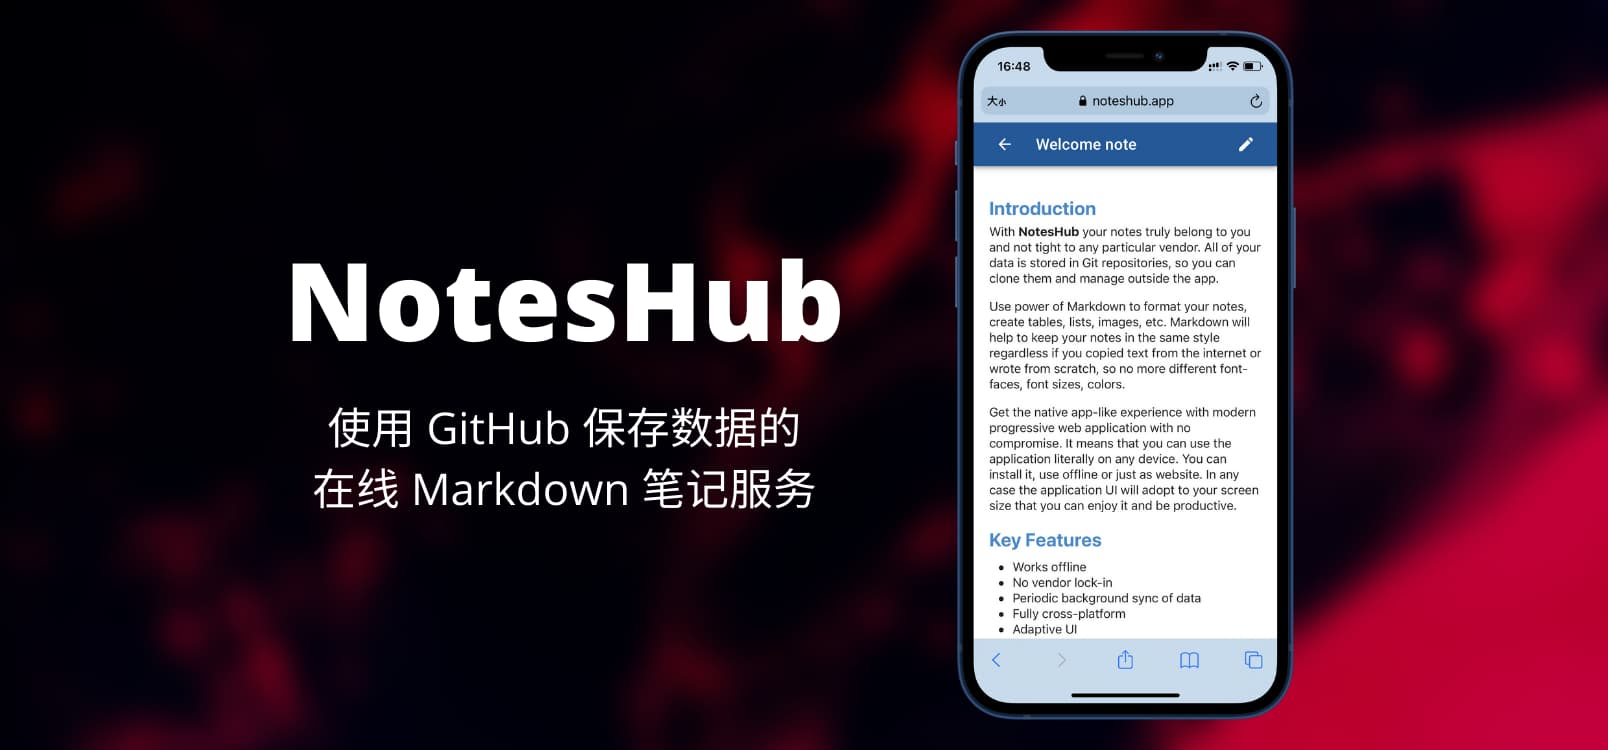 NotesHub - 使用 GitHub 保存数据的在线 Markdown 笔记服务